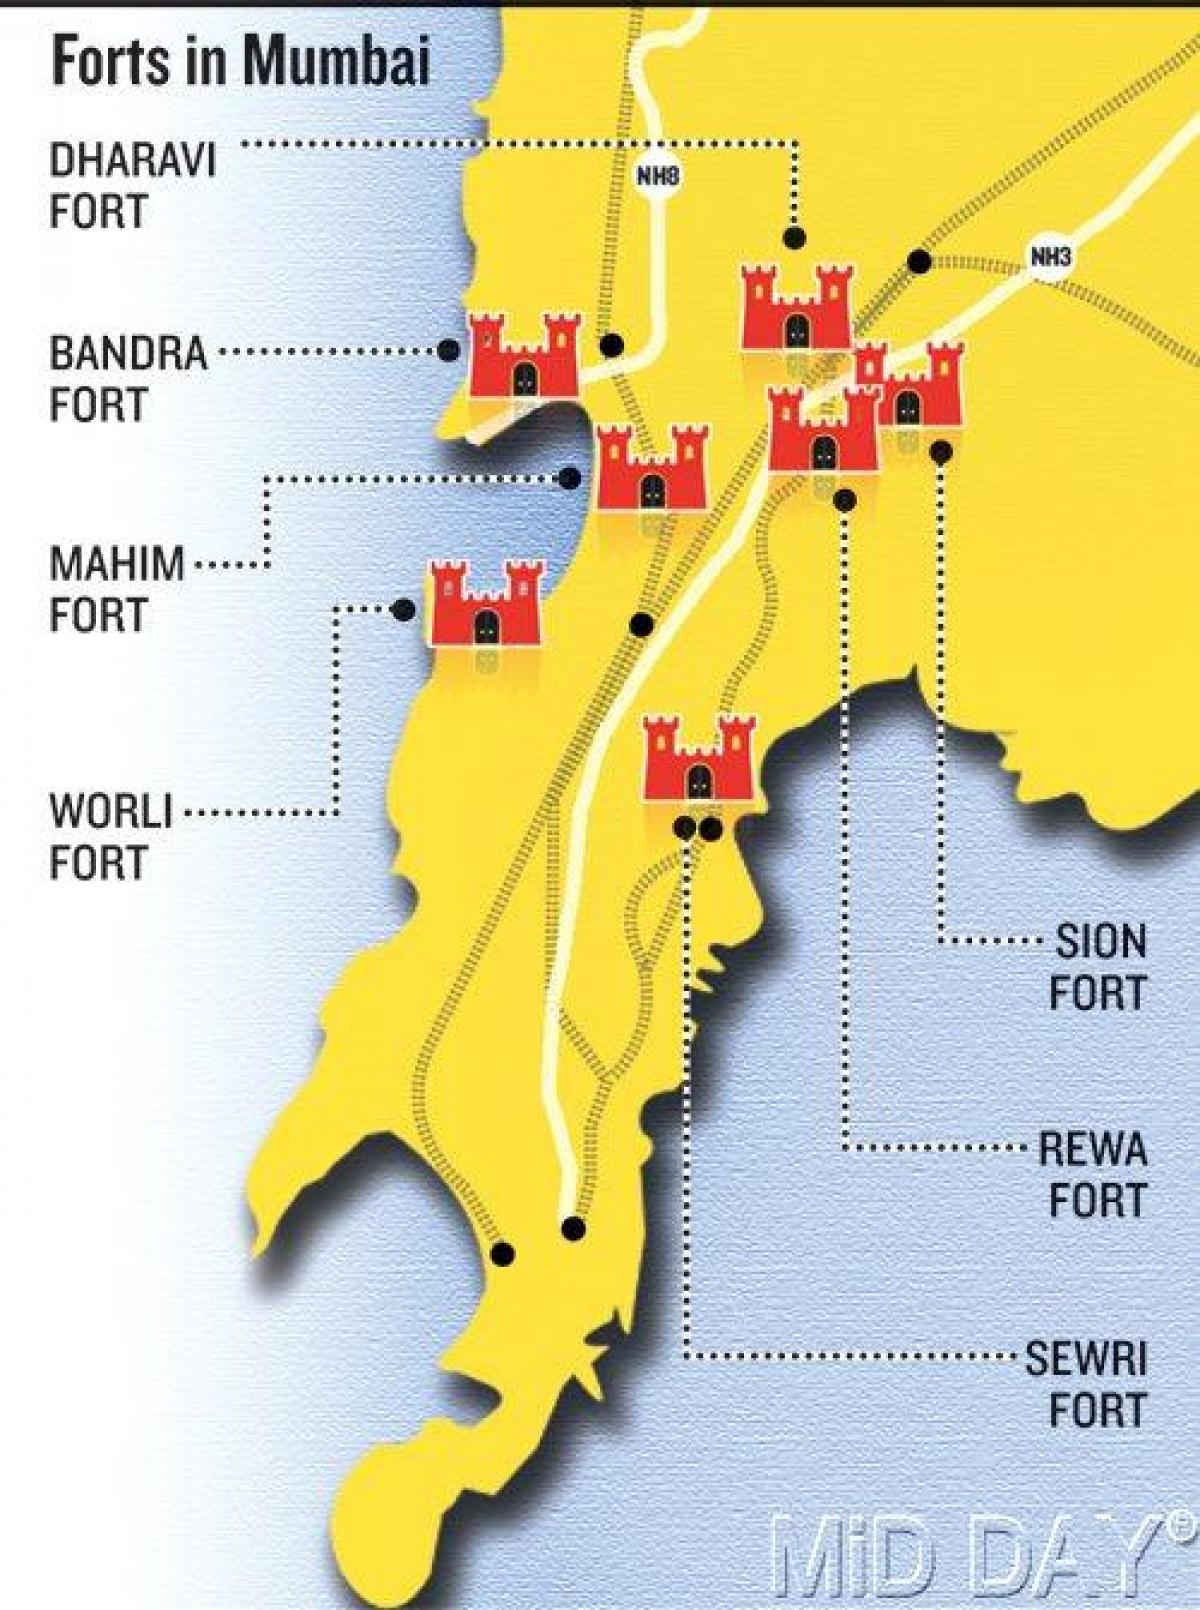 Mumbai fort svæði kort